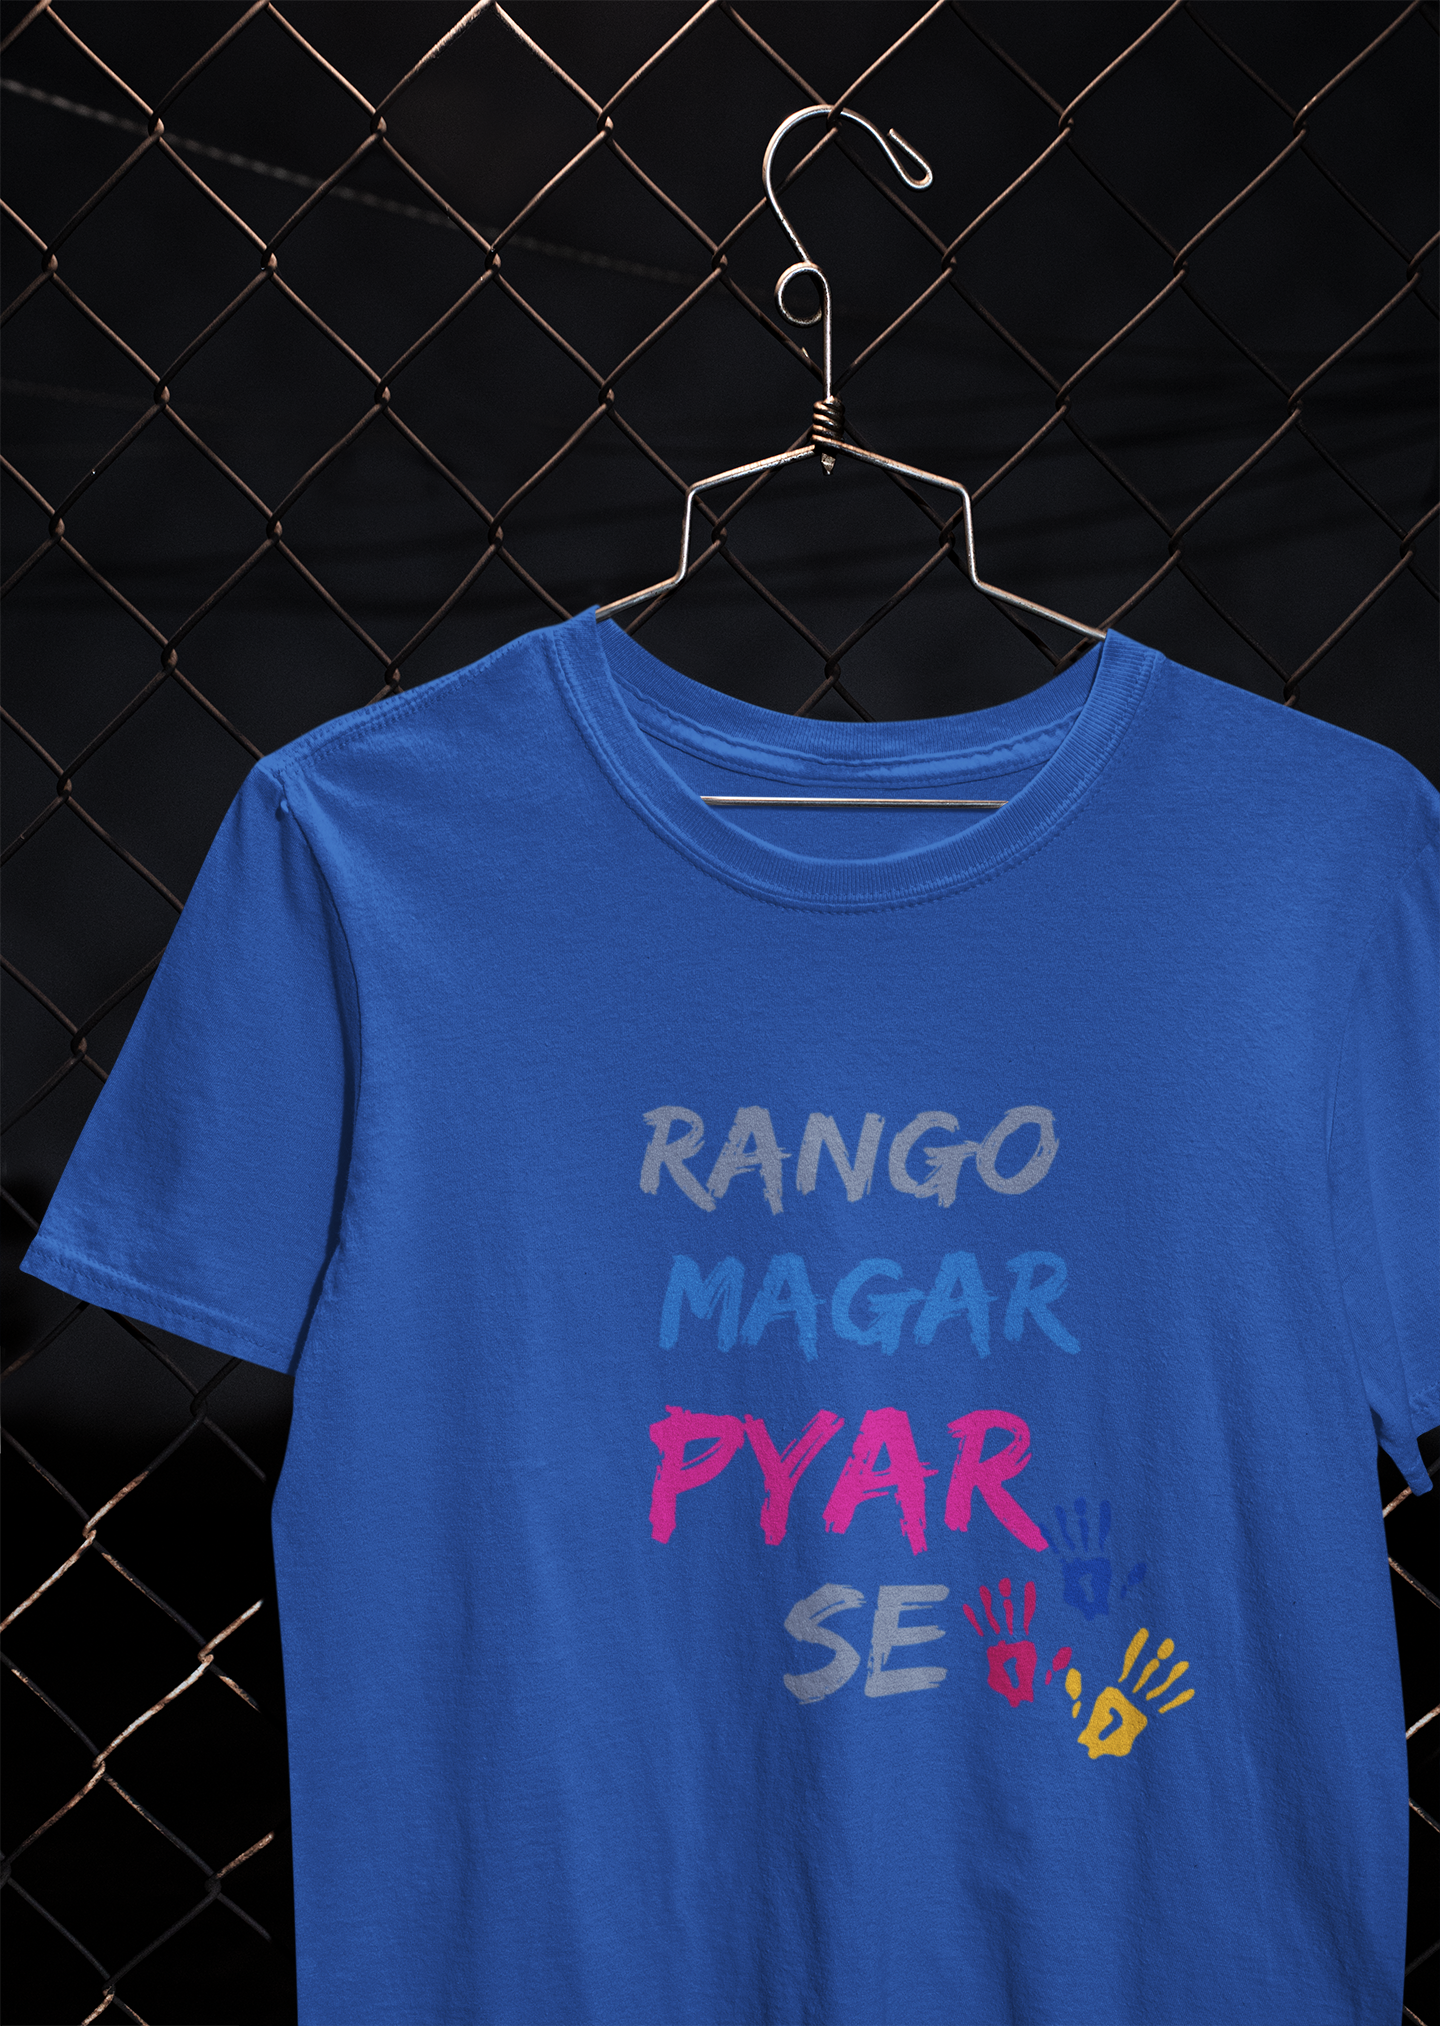 Rango Magar Pyaar Se Women Half Sleeves T-shirt- FunkyTeesClub